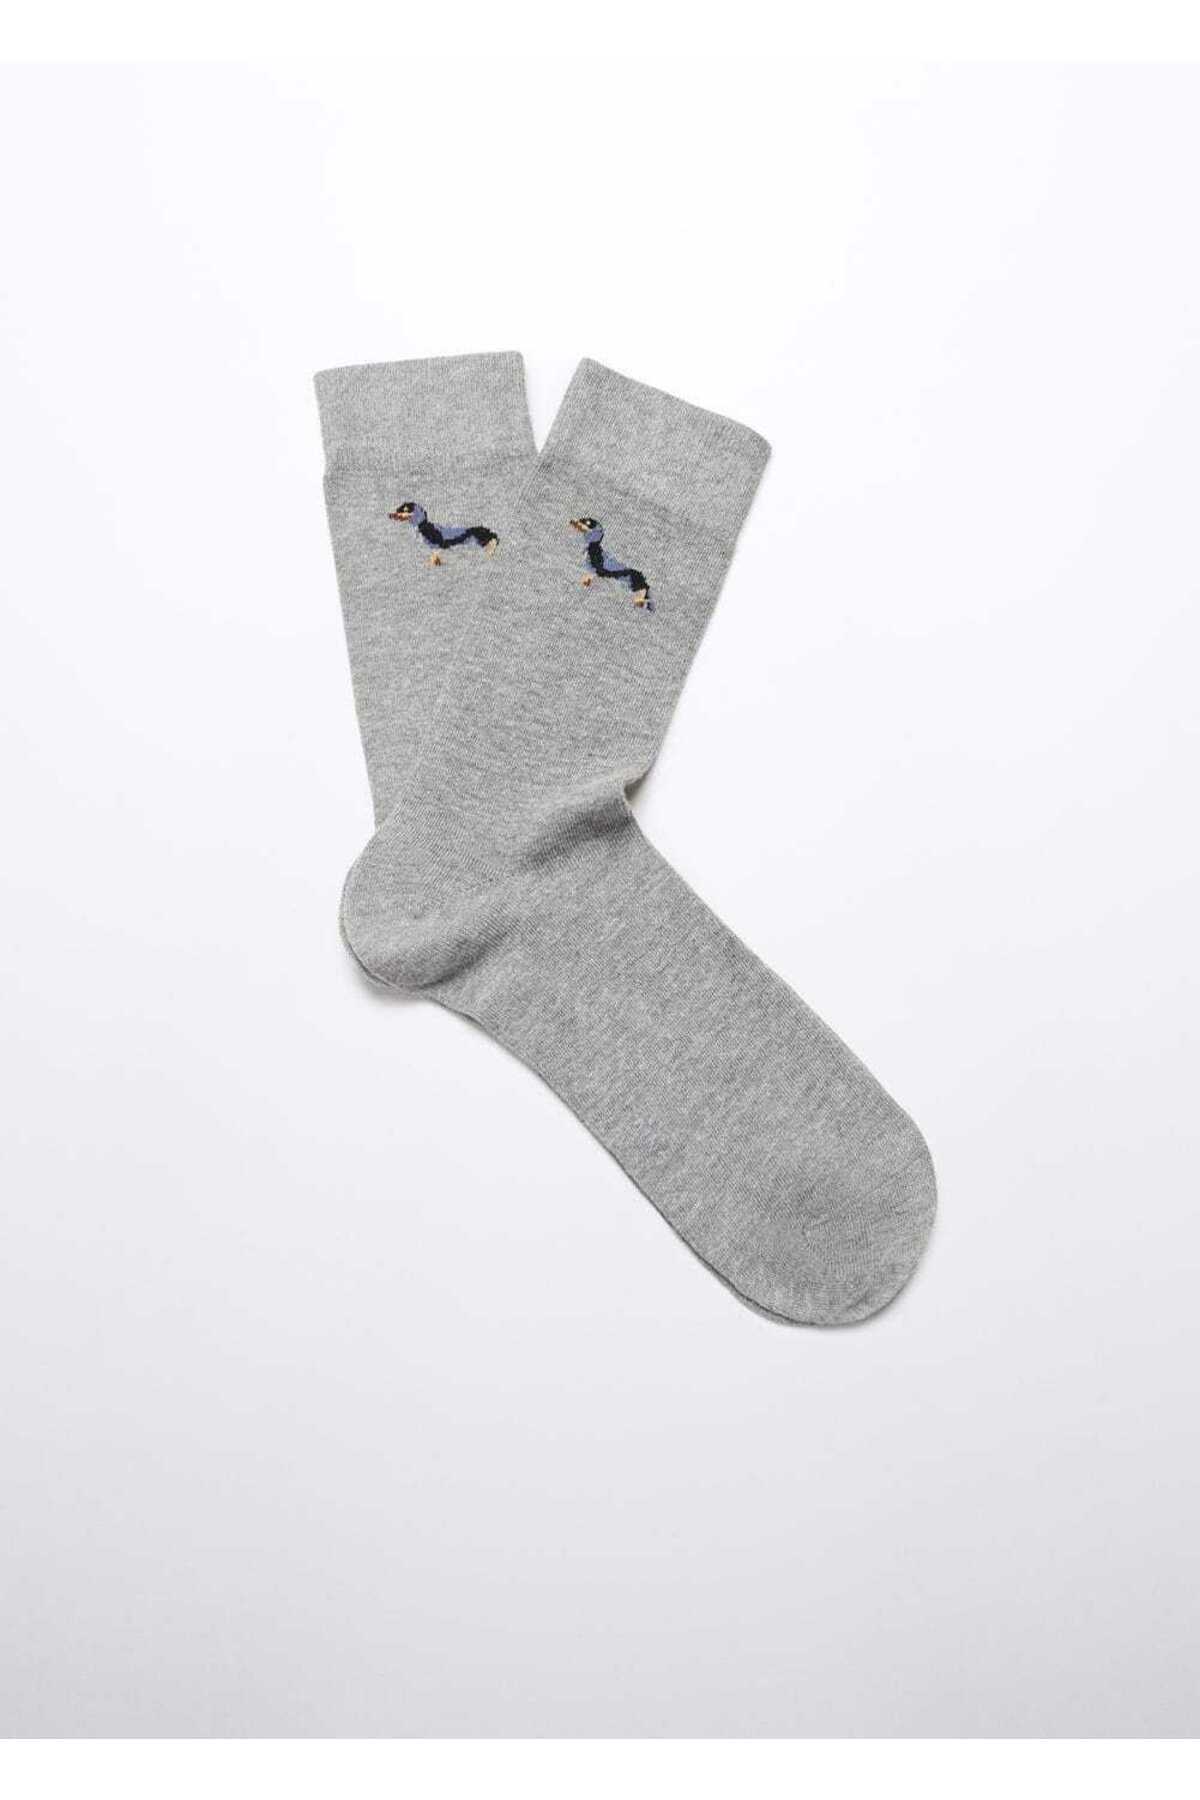 Хлопковые носки с вышивкой «Собака» Mango, серый 1 пара хлопковые носки с вышивкой с надписью love